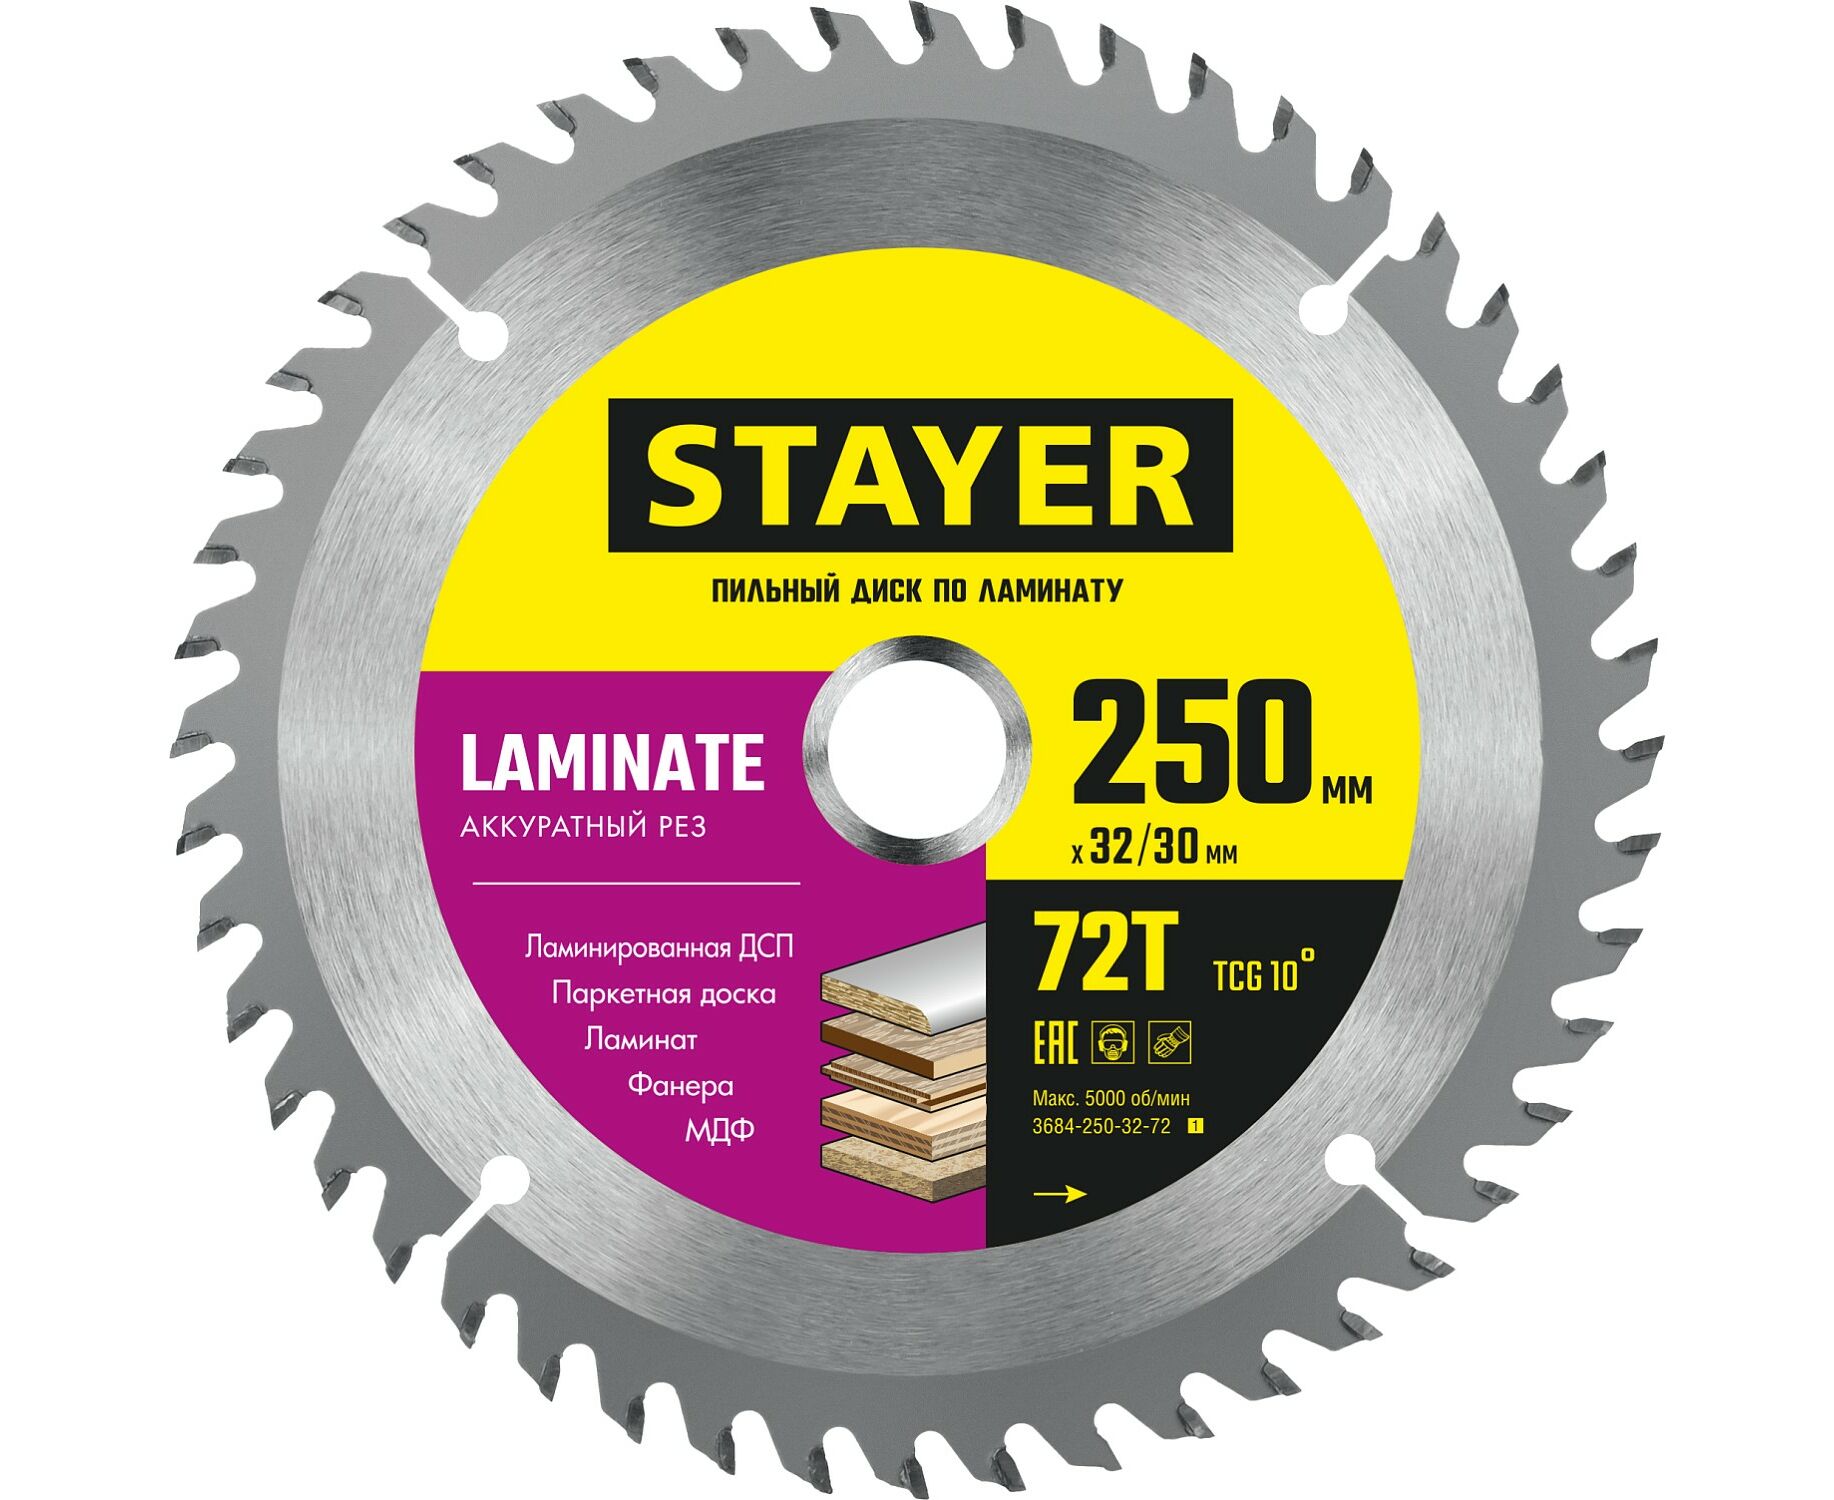 Пильный диск STAYER LAMINATE 250 x 32/30мм 72Т, по ламинату, аккуратный рез пильный диск stayer laminate 235 x 32 30мм 72т по ламинату аккуратный рез